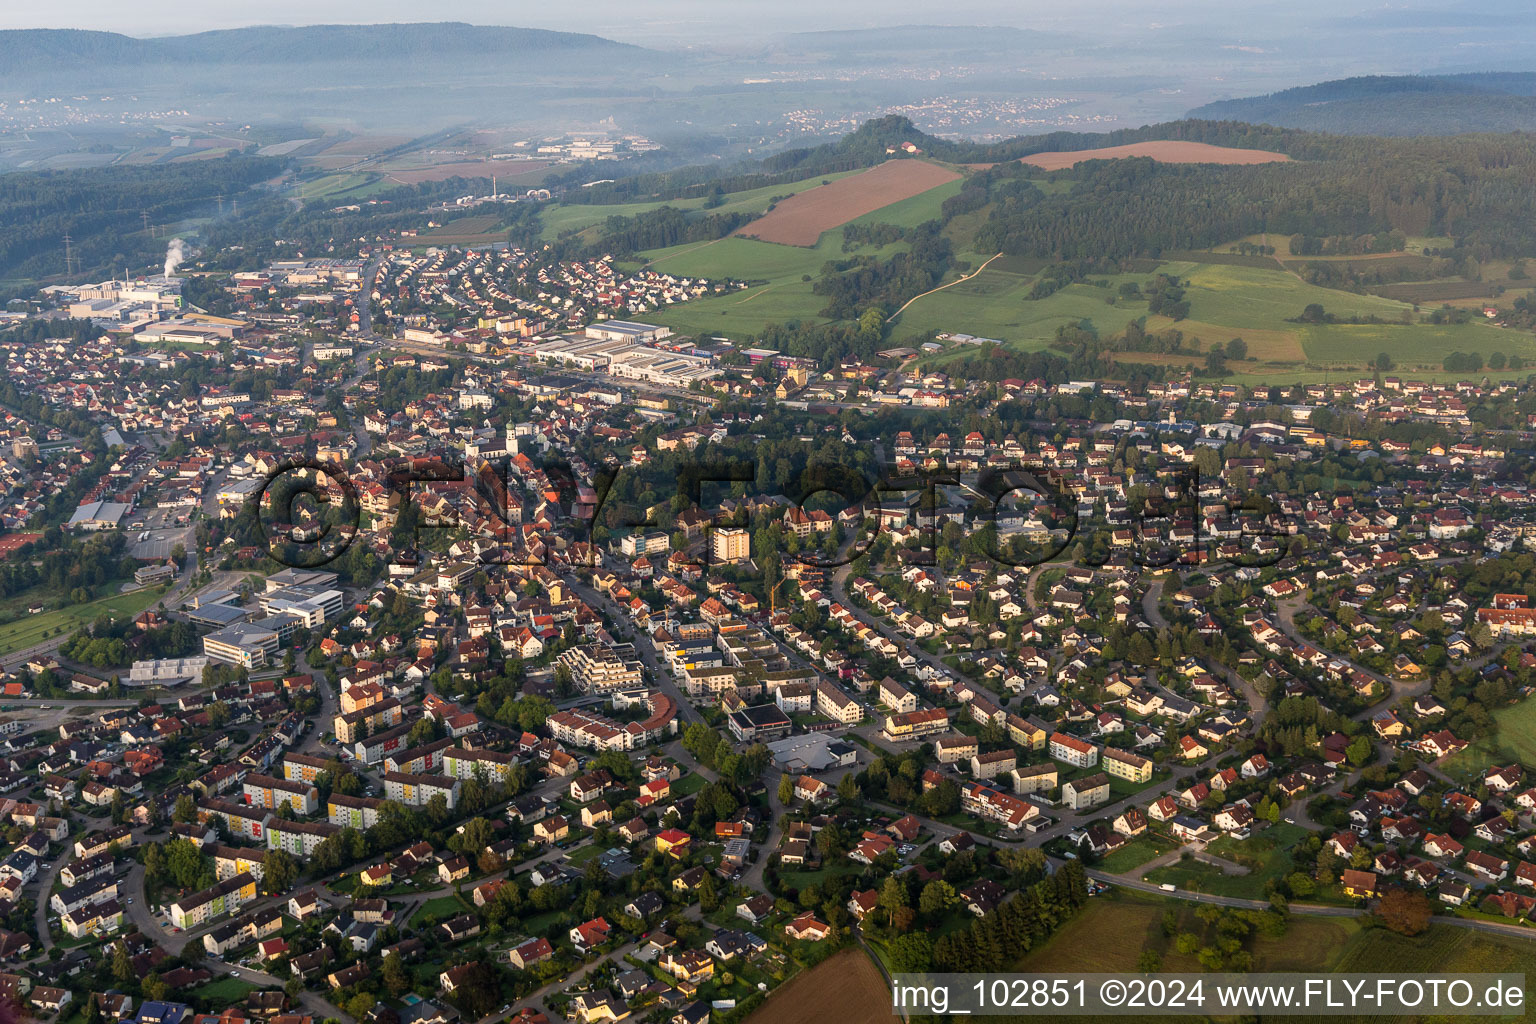 Vue aérienne de Vue des rues et des maisons des quartiers résidentiels à Stockach dans le département Bade-Wurtemberg, Allemagne